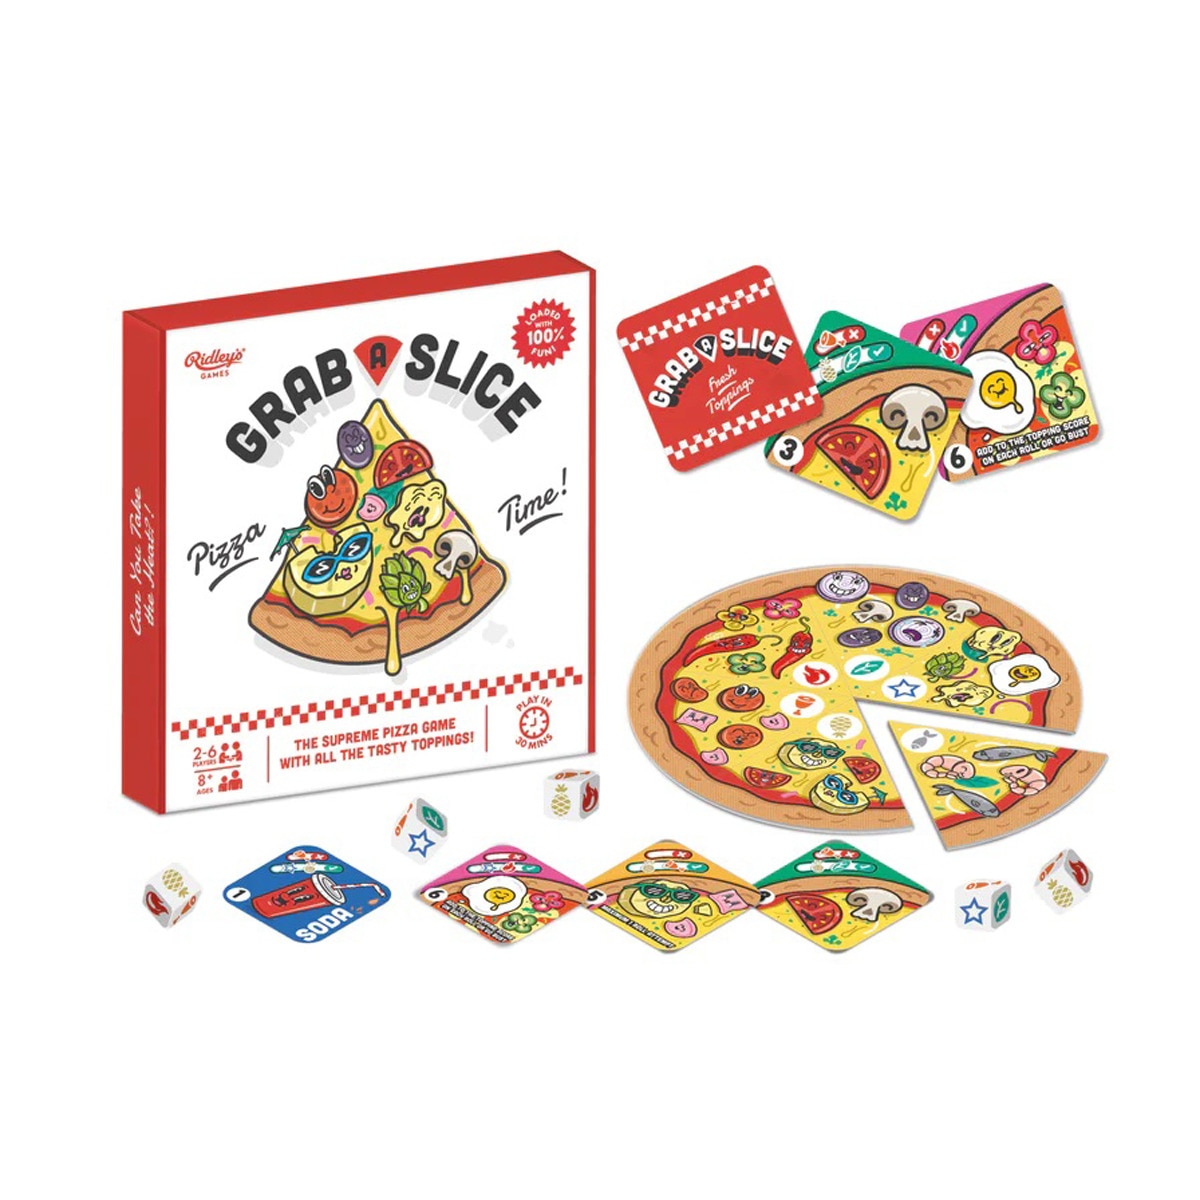 Ridley's Games - Juego Ridley's Games Toma un trozo de pizza.